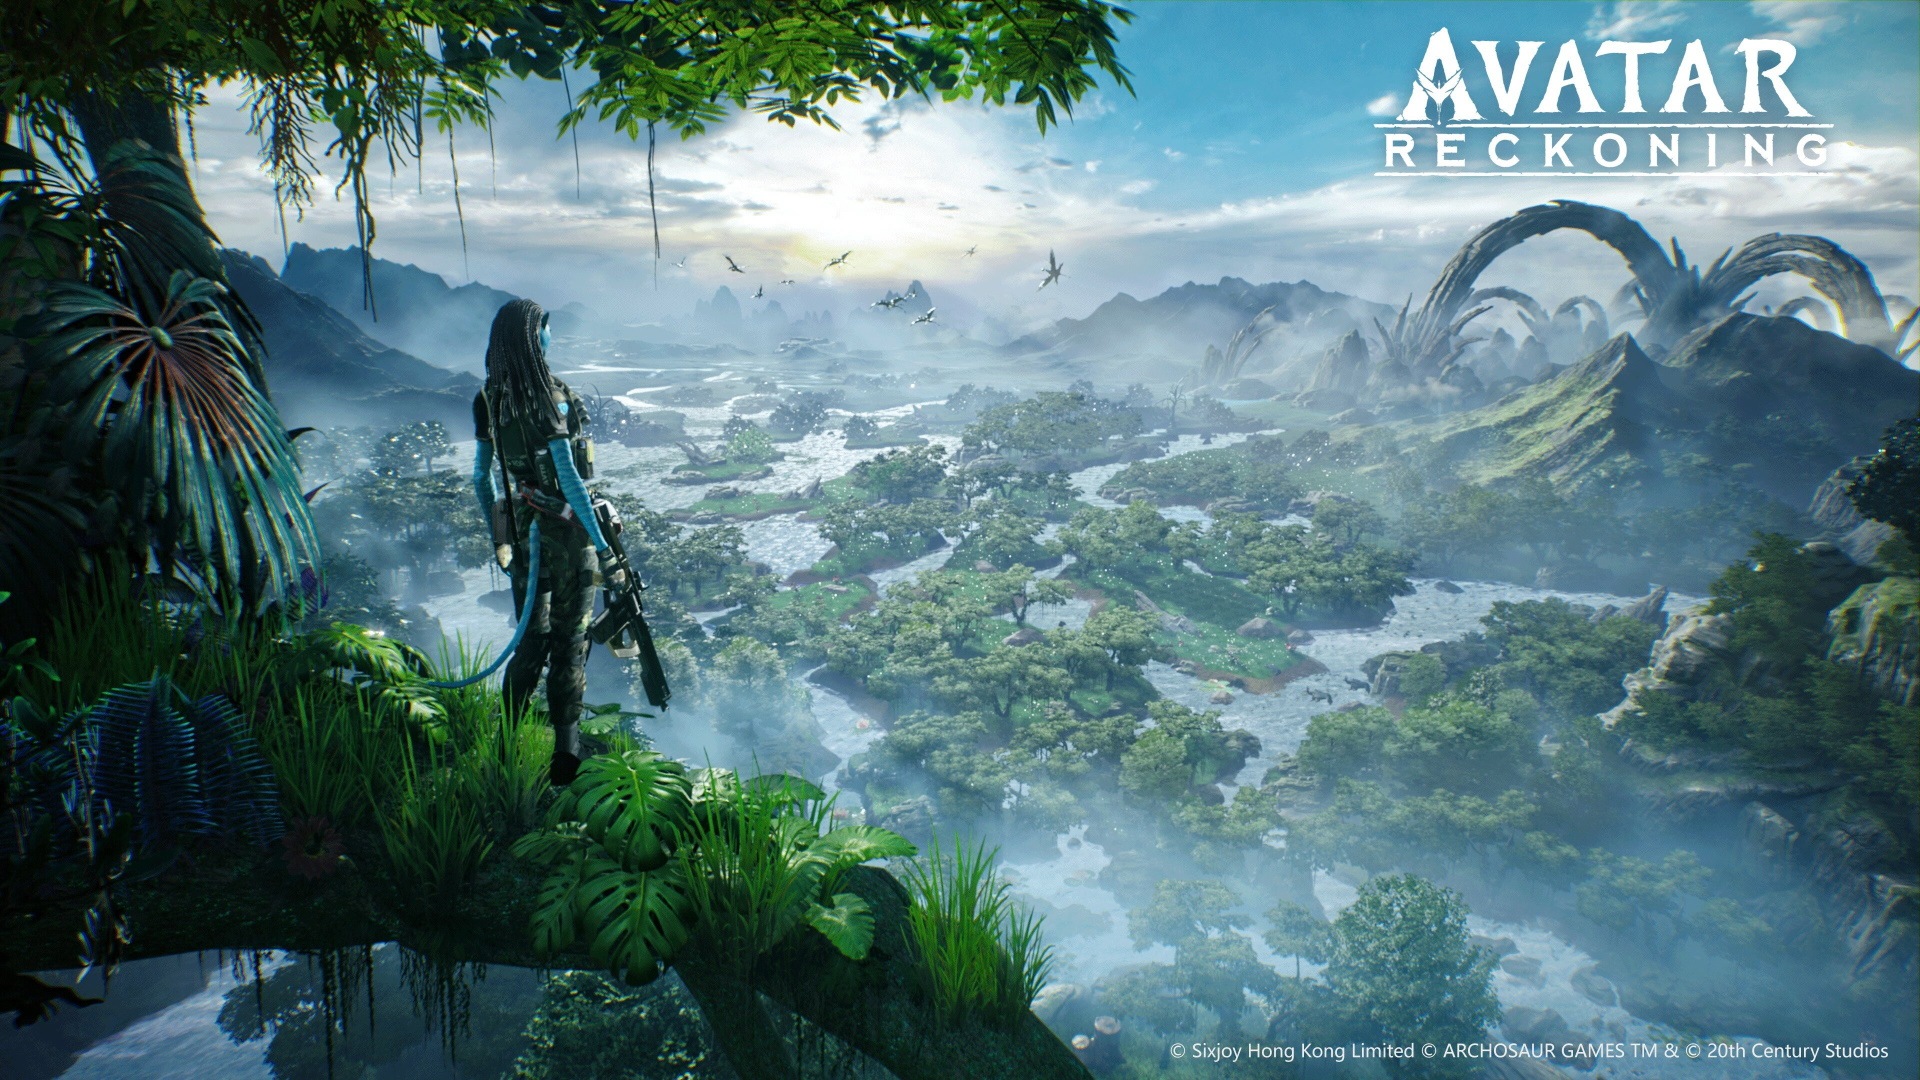 Avatar: Reckoning, Disney và Tencent hợp tác để tạo ra trò chơi mới ...: Disney-Tencent Avatar Game Collaboration: Các fan của bộ phim Avatar sẽ được chào đón một tin vui khi Disney và Tencent quyết định hợp tác để tạo ra một trò chơi mới mang tên Avatar: Reckoning! Với đồ họa ấn tượng, cốt truyện hấp dẫn và chế độ chơi đa dạng, trò chơi này hứa hẹn sẽ đưa người chơi tới một cuộc phiêu lưu rực rỡ và đầy cảm xúc trong thế giới Avatar.